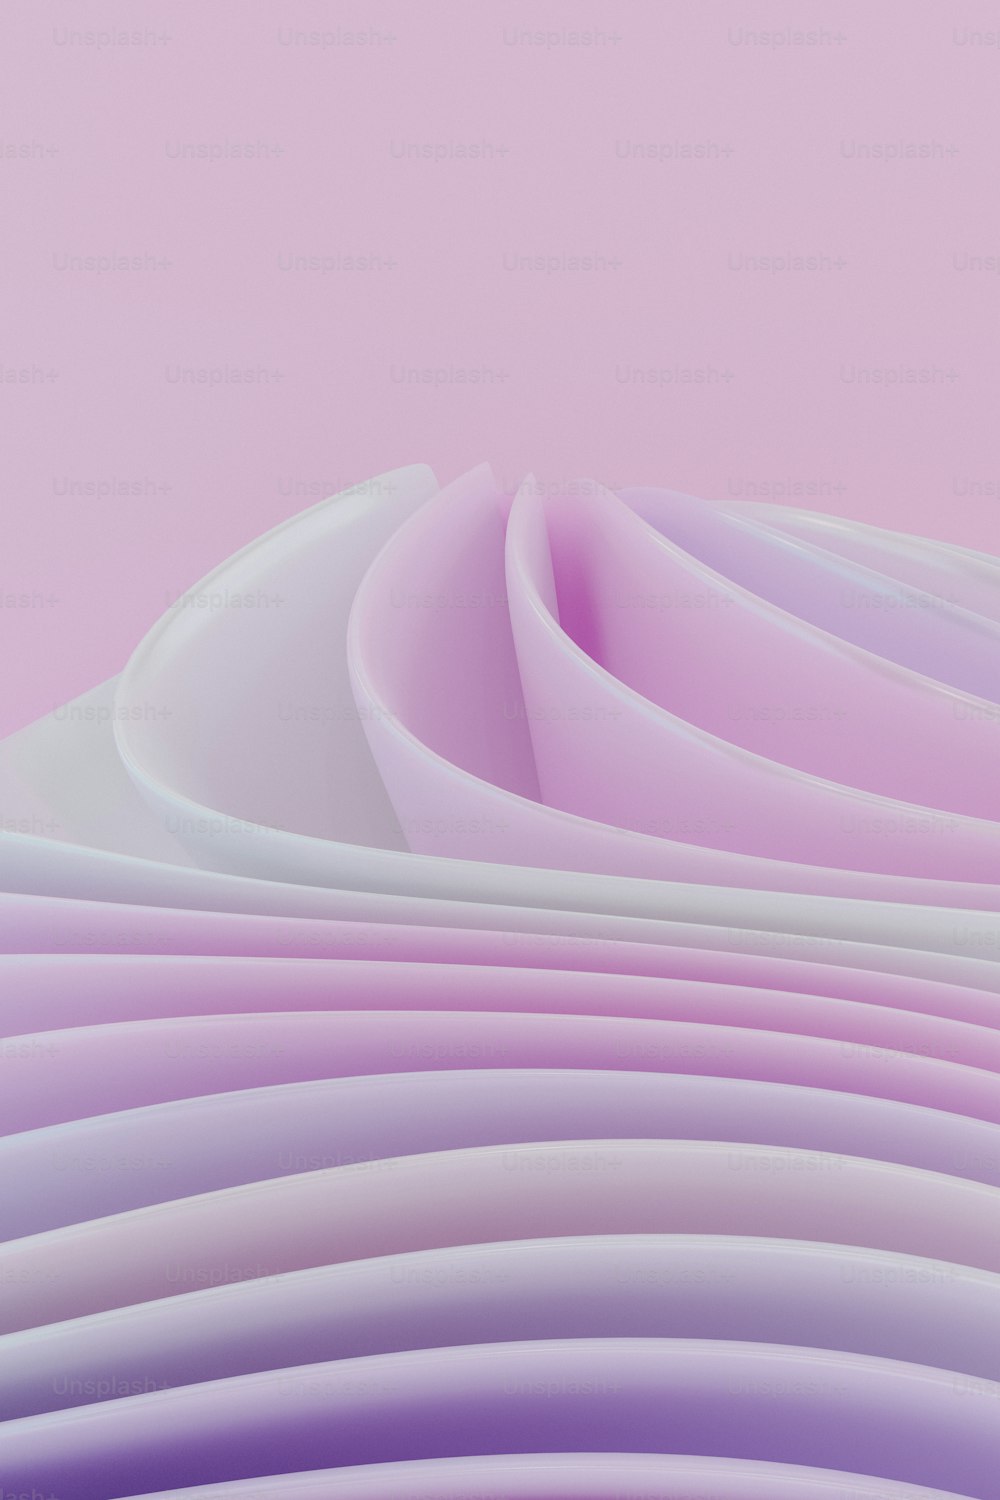 Un primer plano de un fondo rosa y púrpura